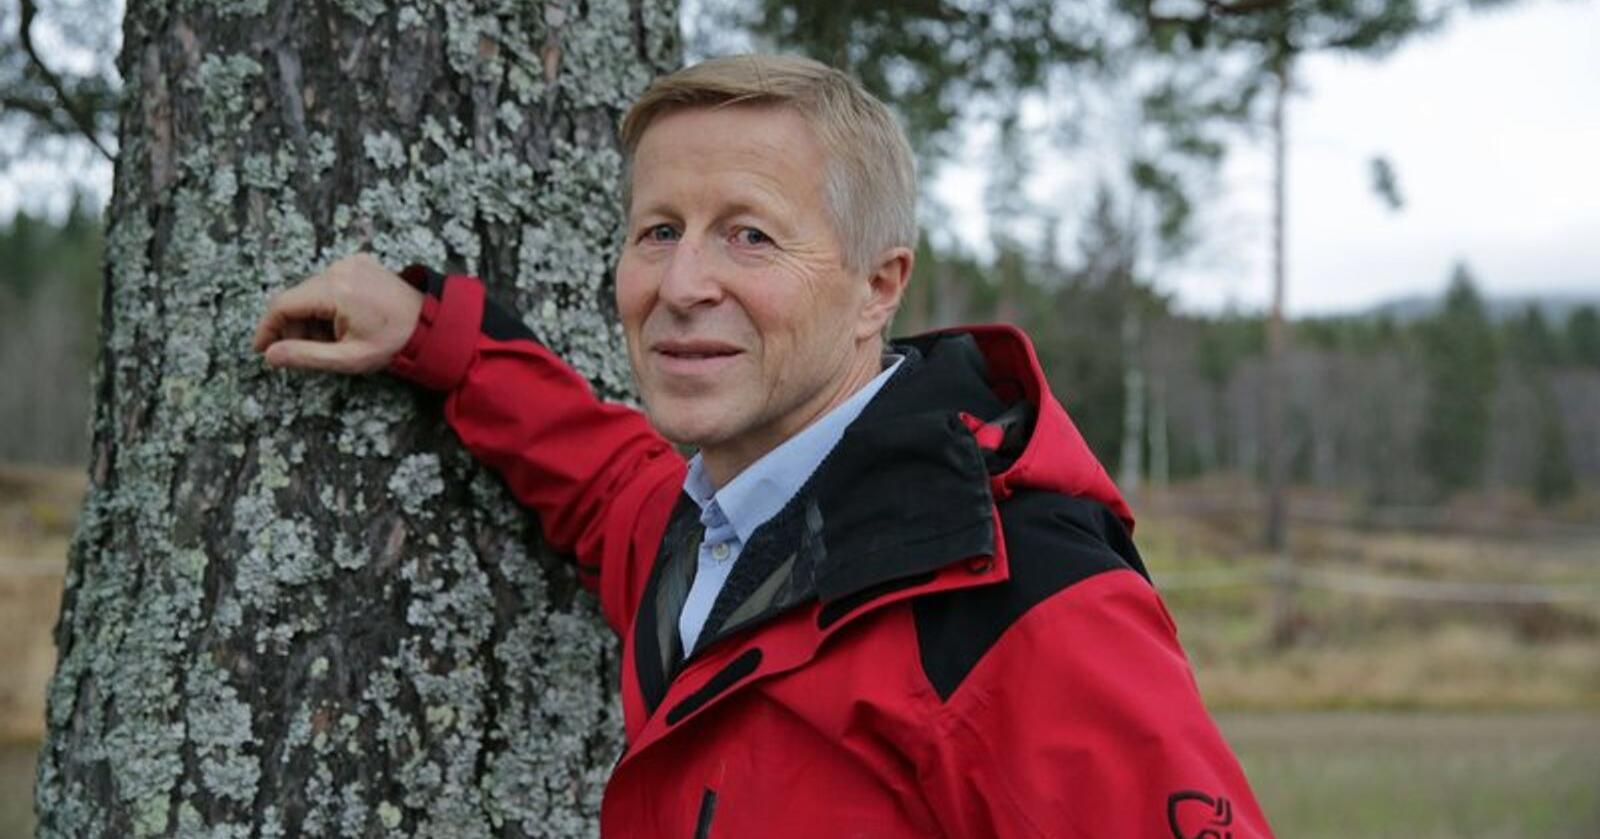 At det hogges noe gammel skog, betyr heller ikke at vi får mindre gammel skog, skriver Per Skorge, administrerende direktør i Norges Skogeierforbund. Foto: Gina Aakre